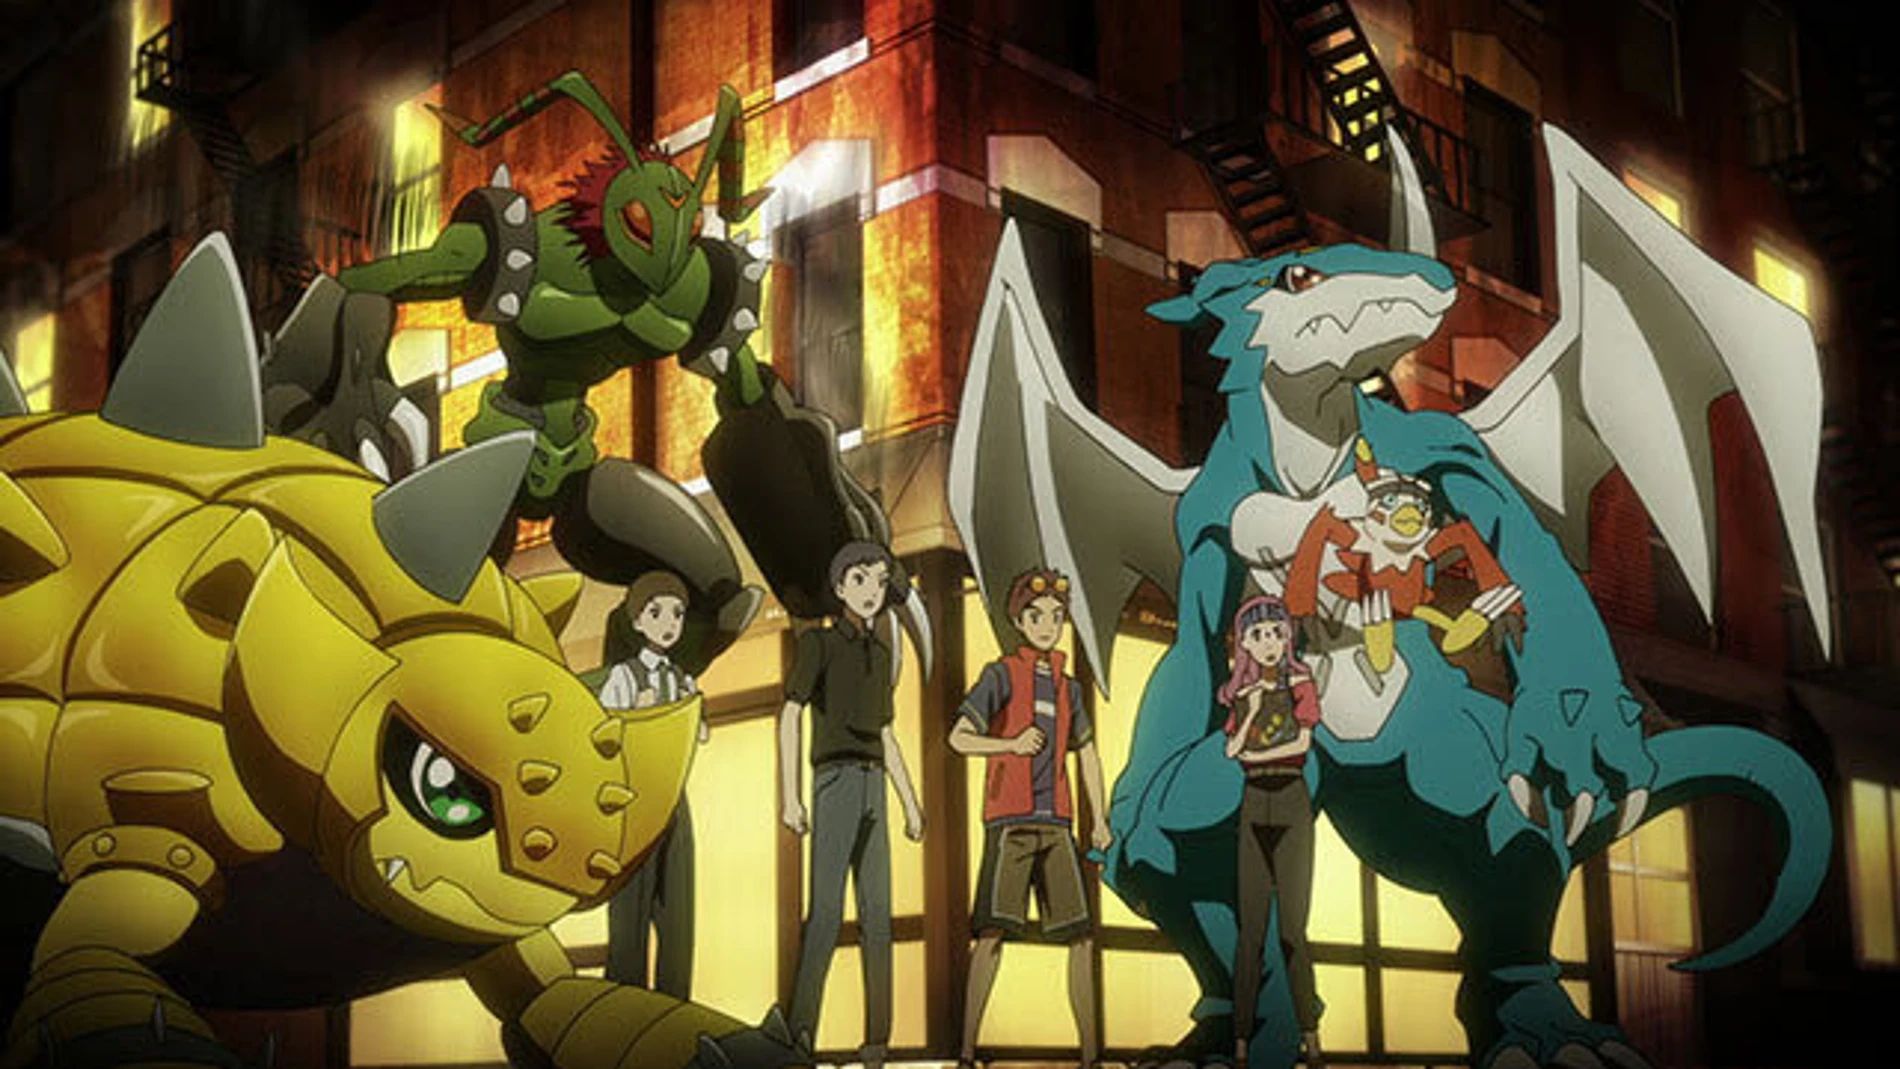 Una escena de la película de animación "Digimon"